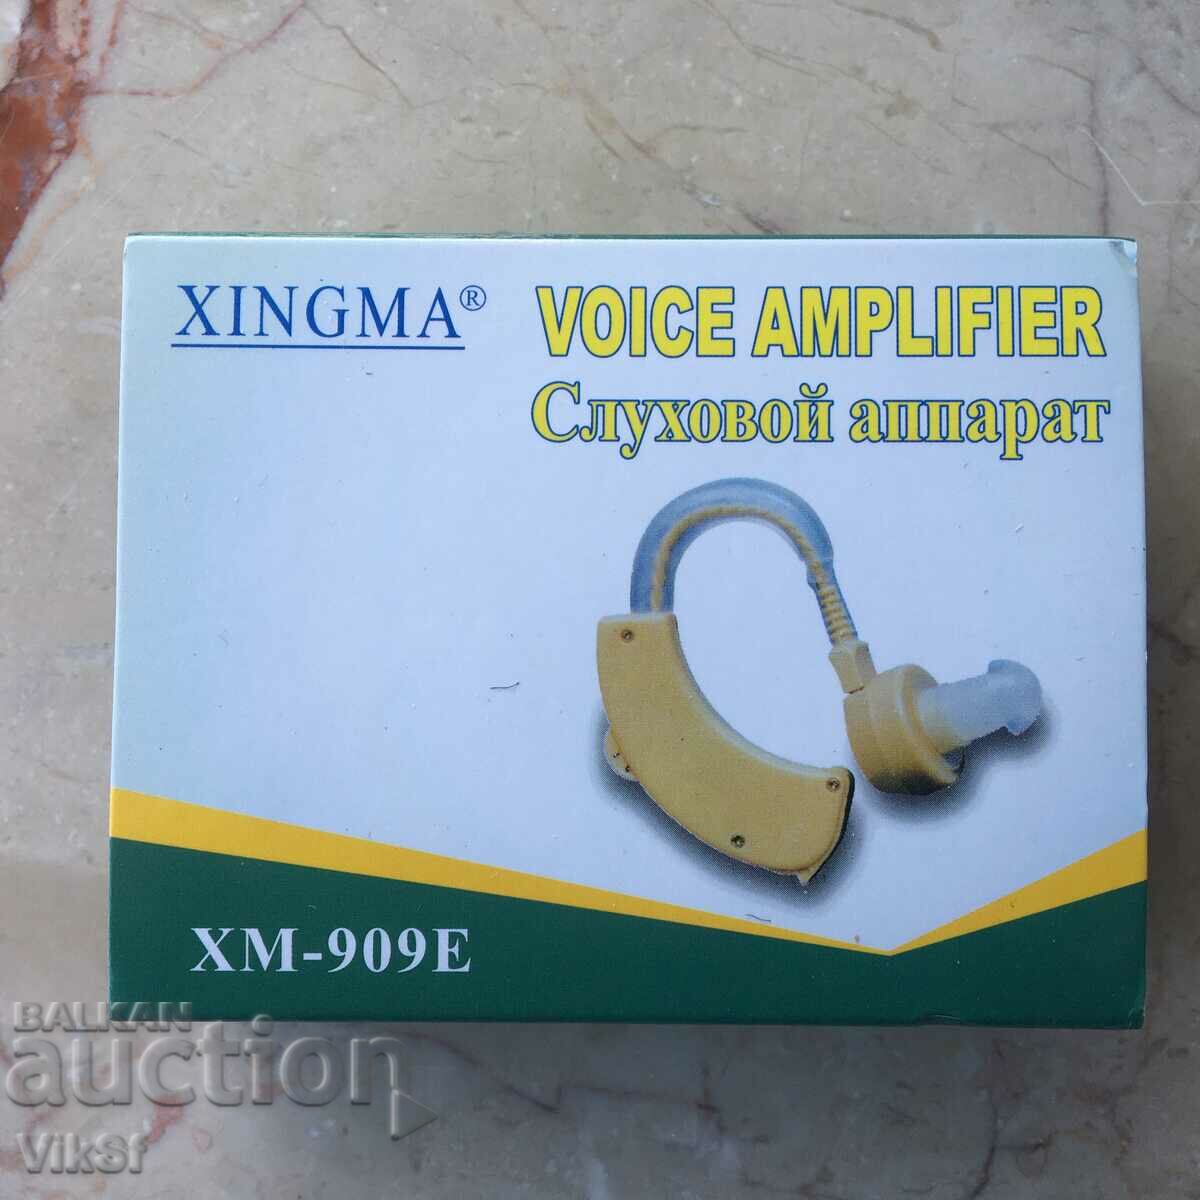 Υψηλής ποιότητας ακουστικό βαρηκοΐας Xm-909e